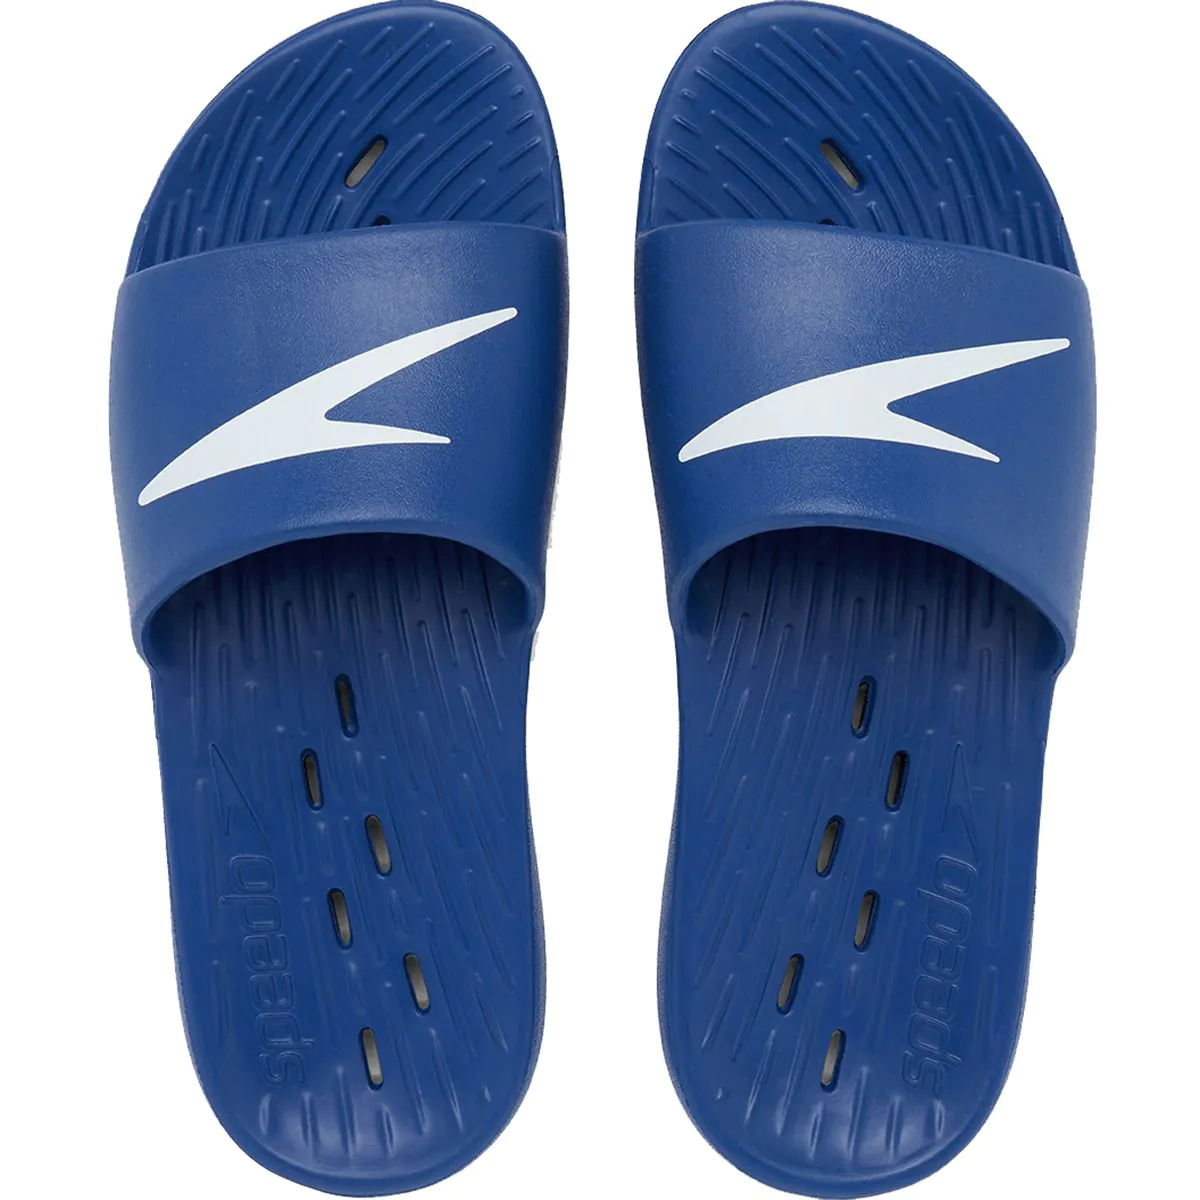 Speedo Slide AM Men's Slippers 12229-5651